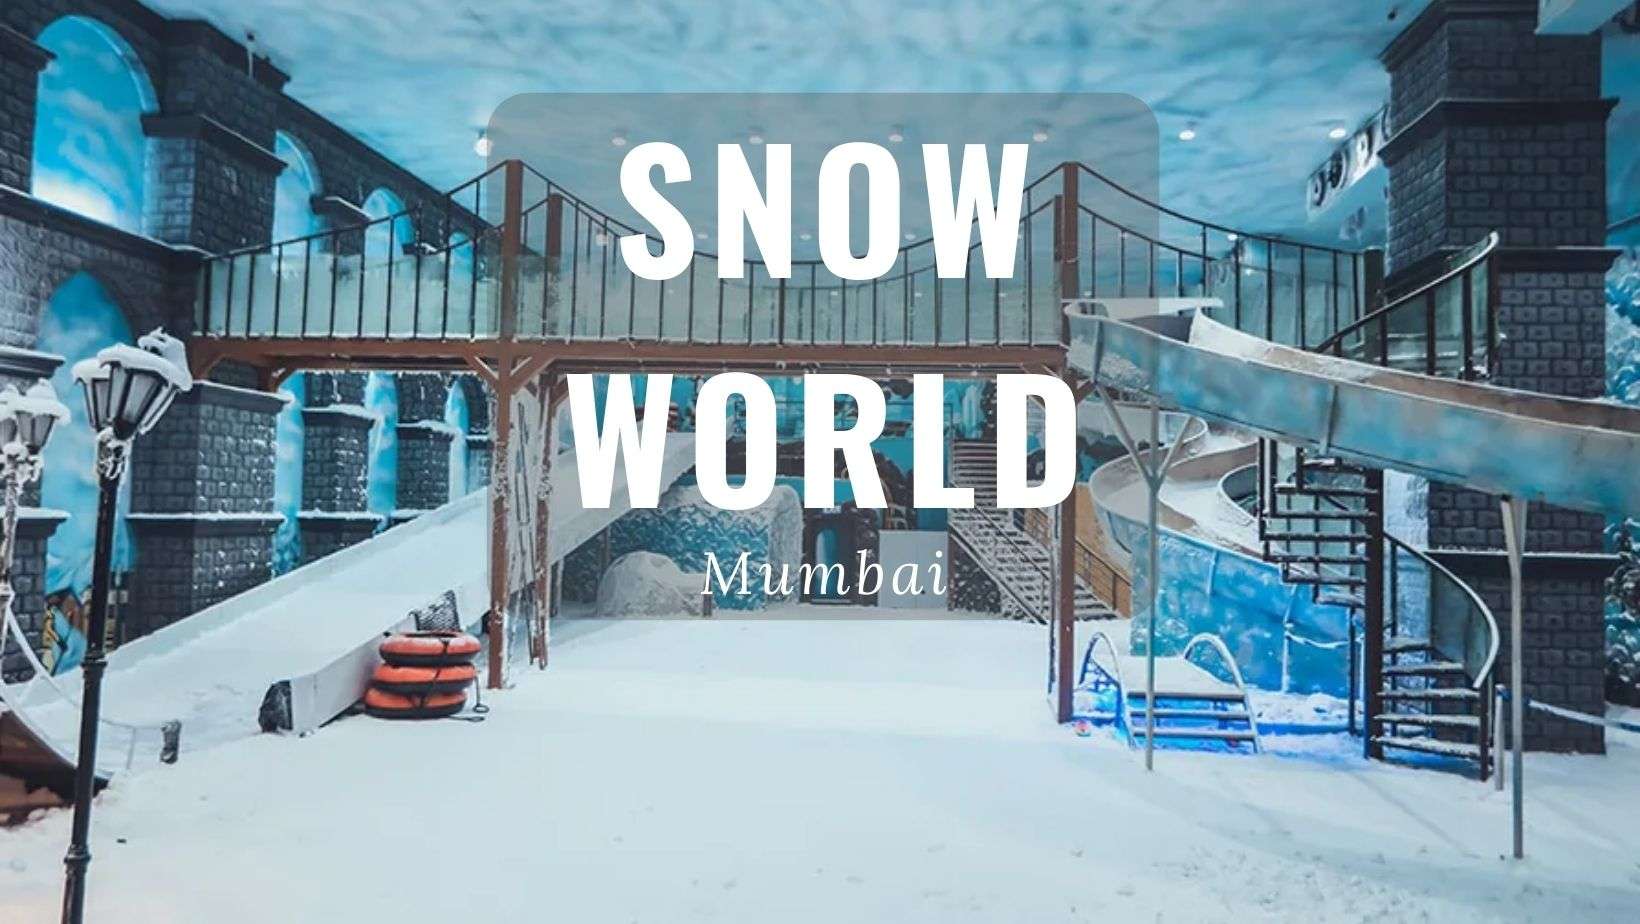 Snow world mumbai photos